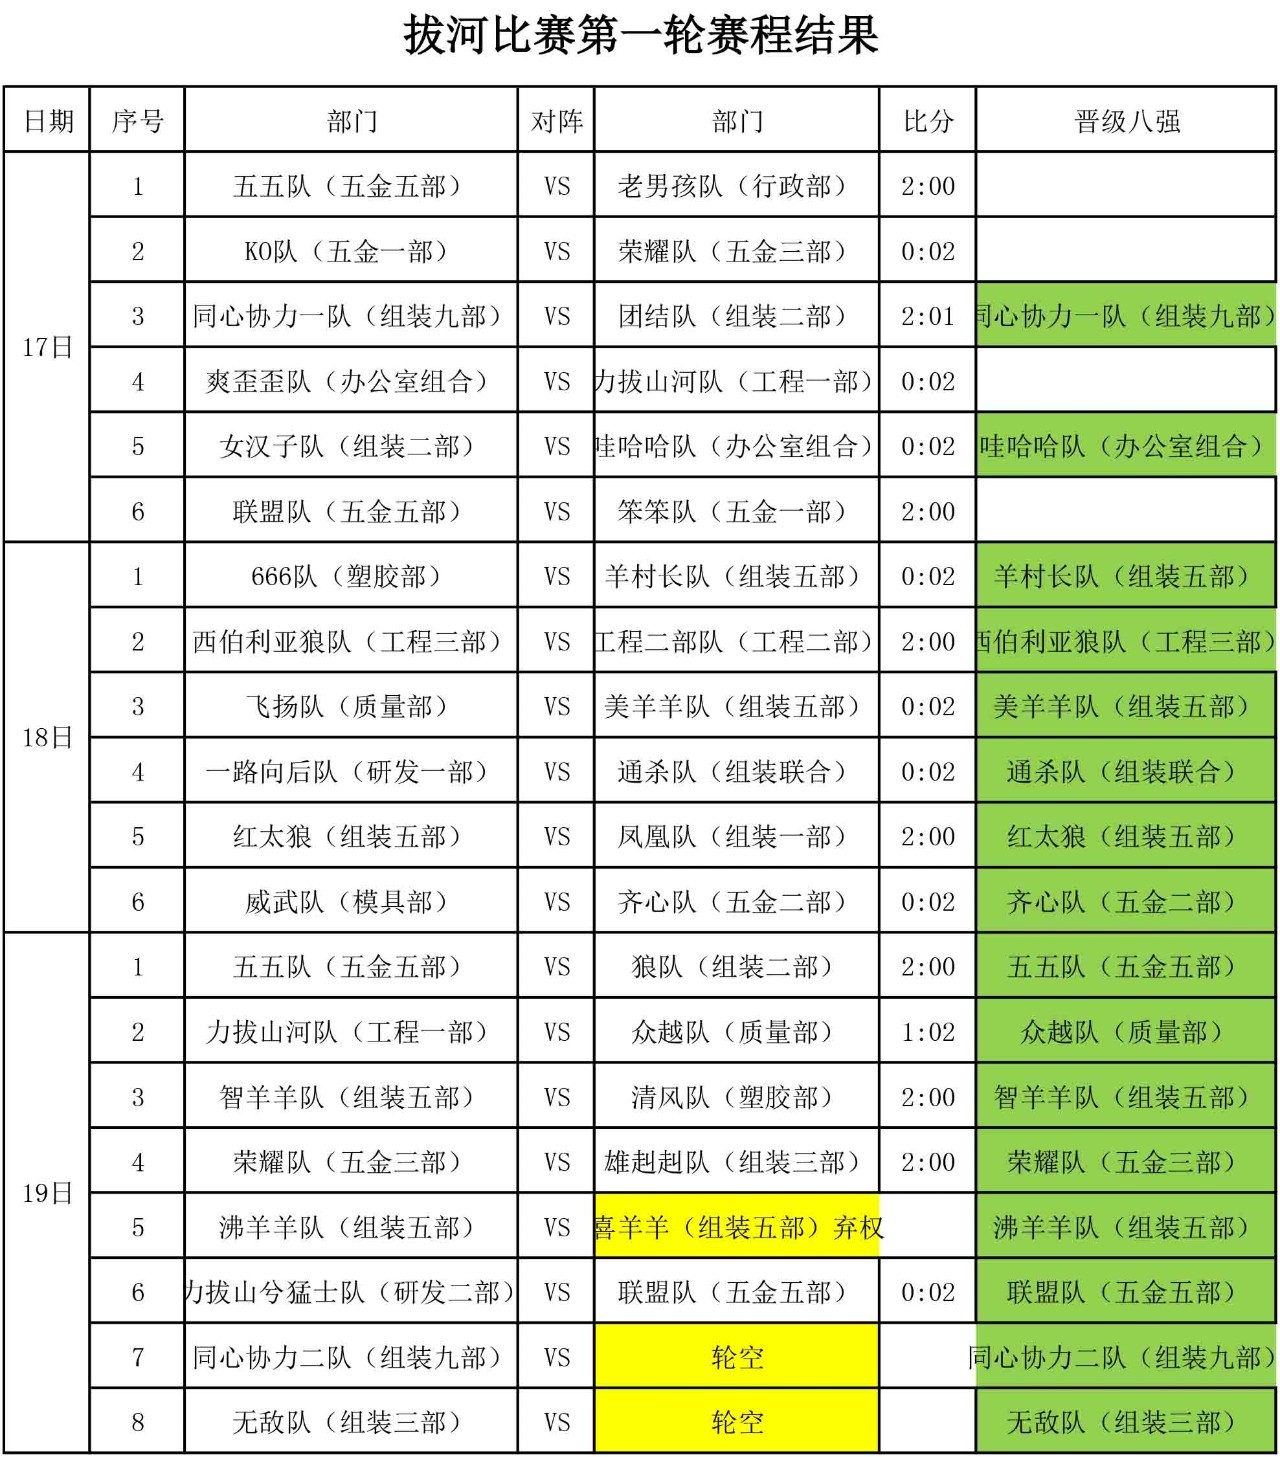 2017电连拔河比赛第二轮赛程表公布